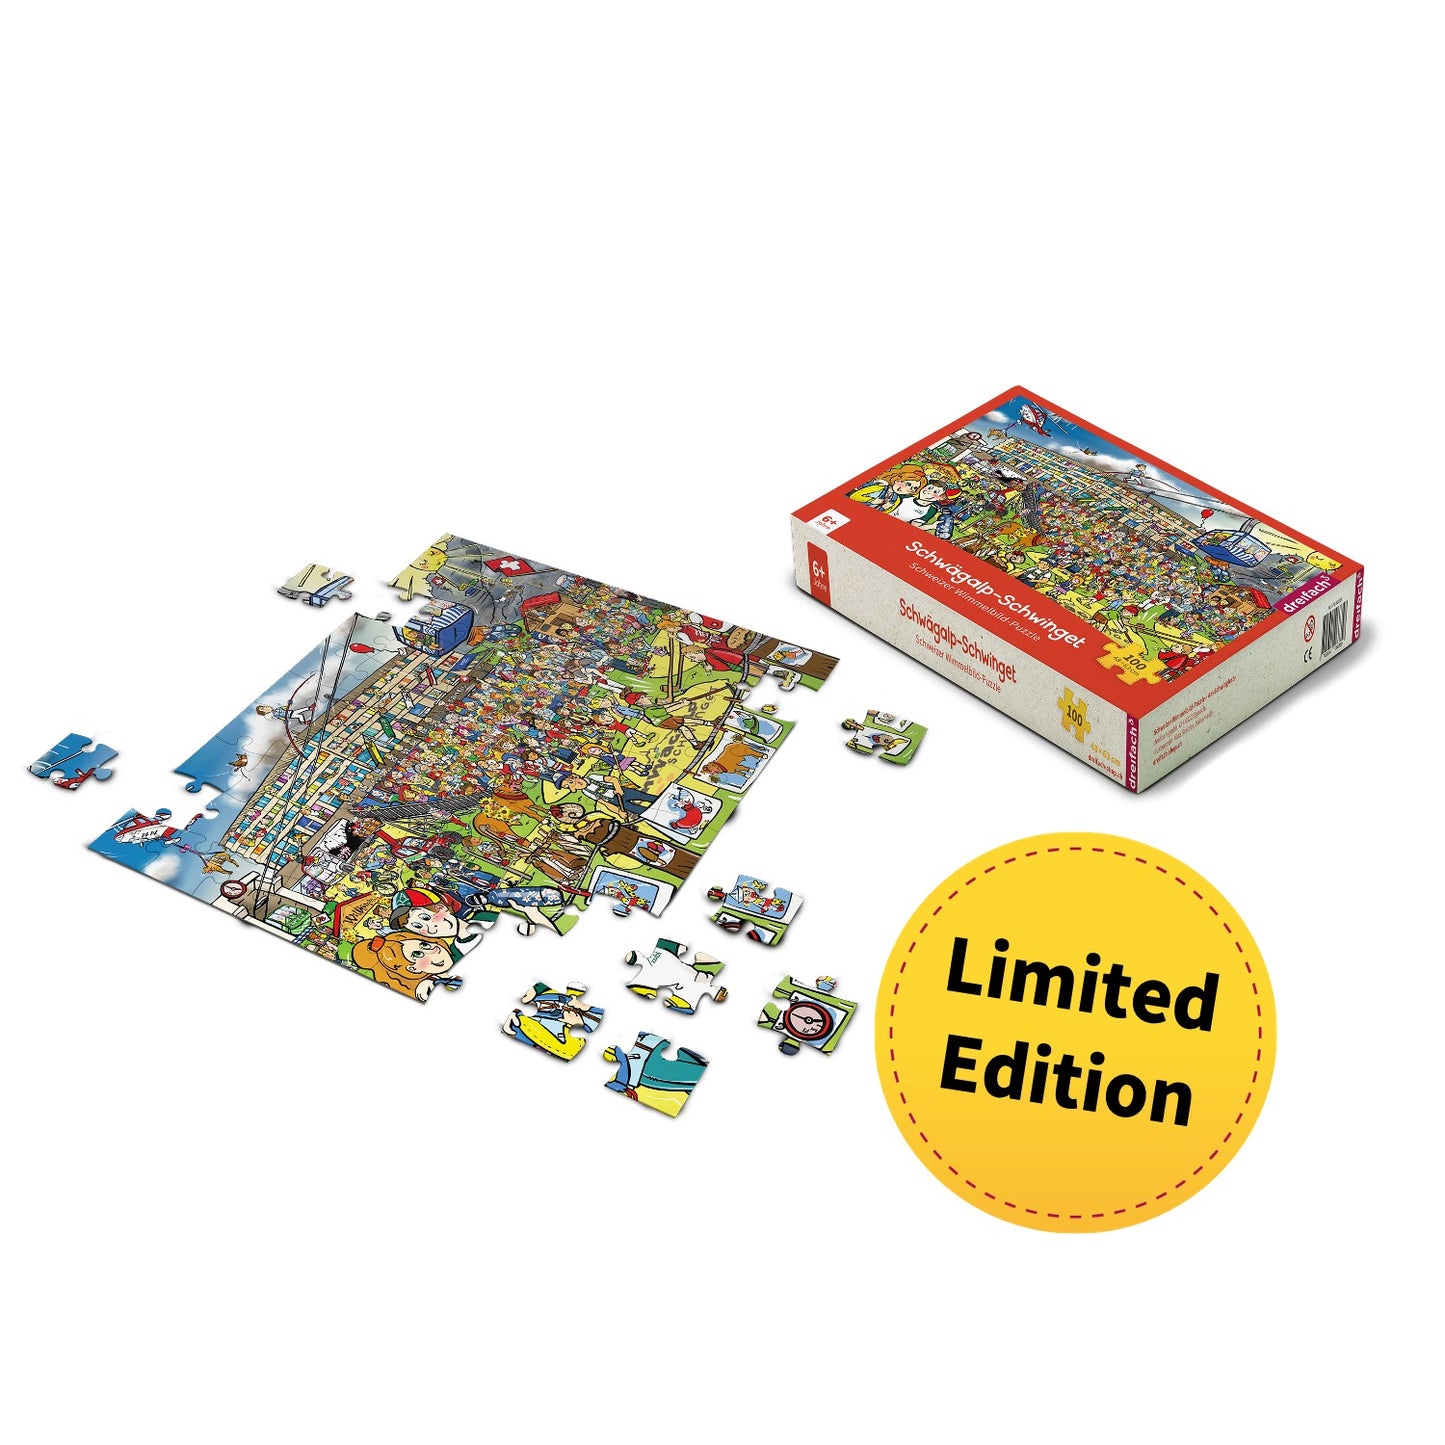 XL Schwingfest-Puzzle «Schwägalp-Schwinget» - 100 Teile für Kinder ab 6 Jahre